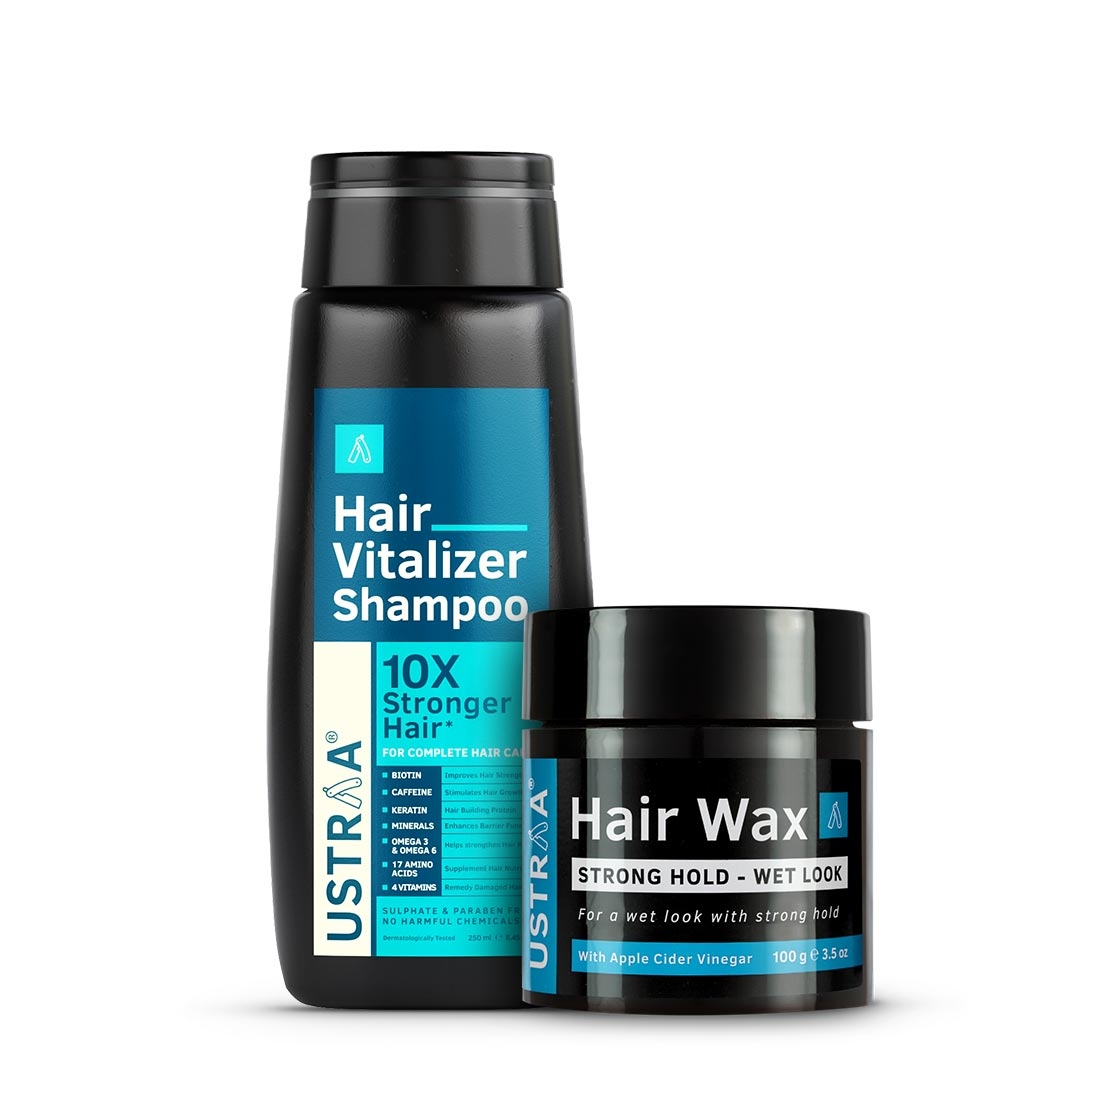 Ustraa | Ustraa Hair Vitalizer Shampoo - 250ml & Hair Wax - Strong Hold, Wet Look - 100g 0